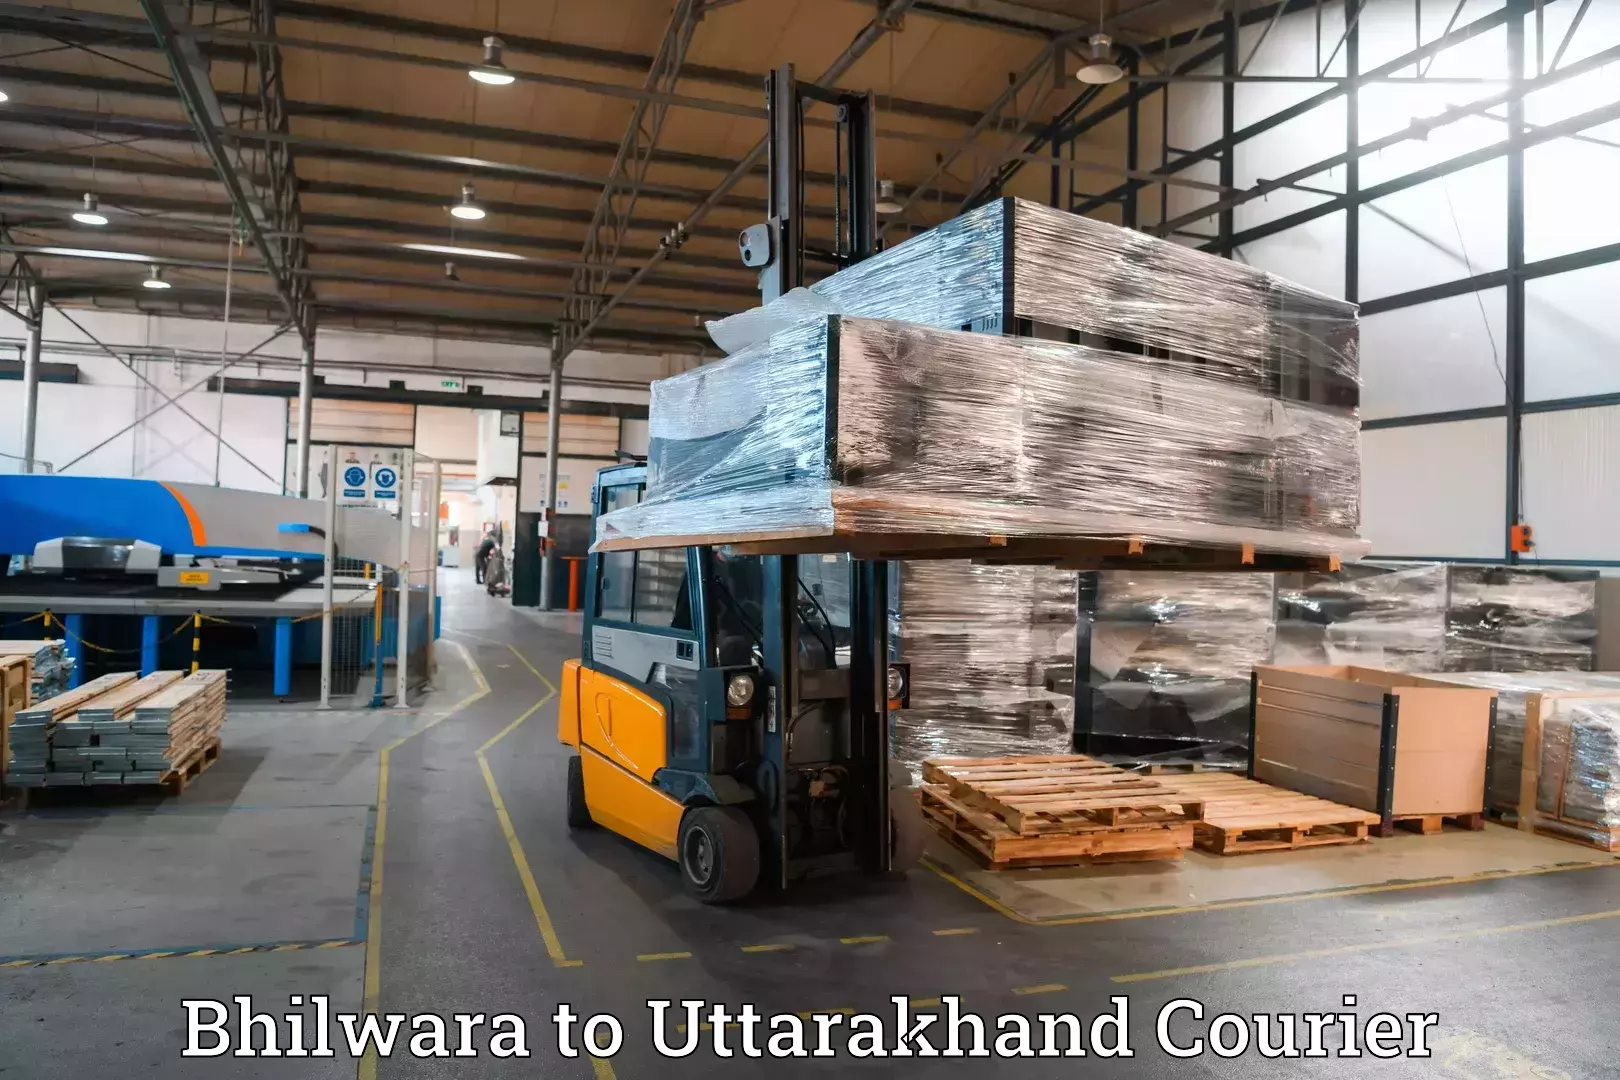 Luggage transport consultancy Bhilwara to IIT Roorkee